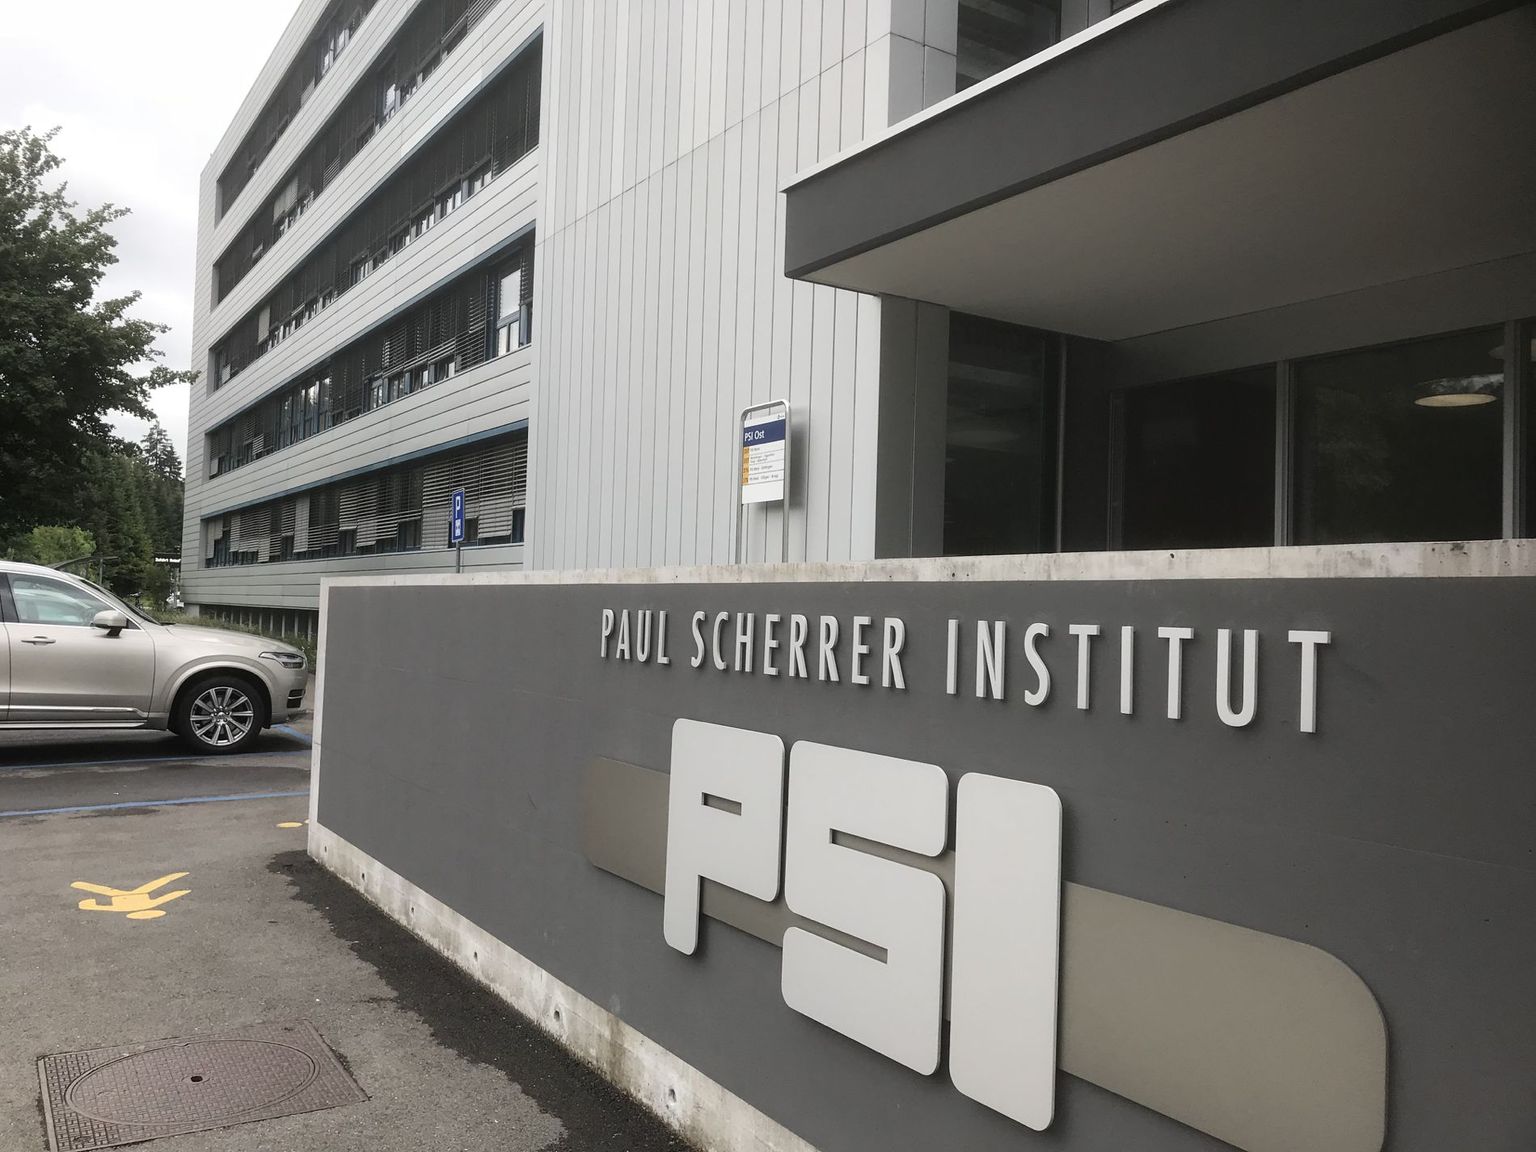 Der Eingang zum Paul Scherrer Institut, einer grossen Forschungseinrichtung des ETH-Bereichs.